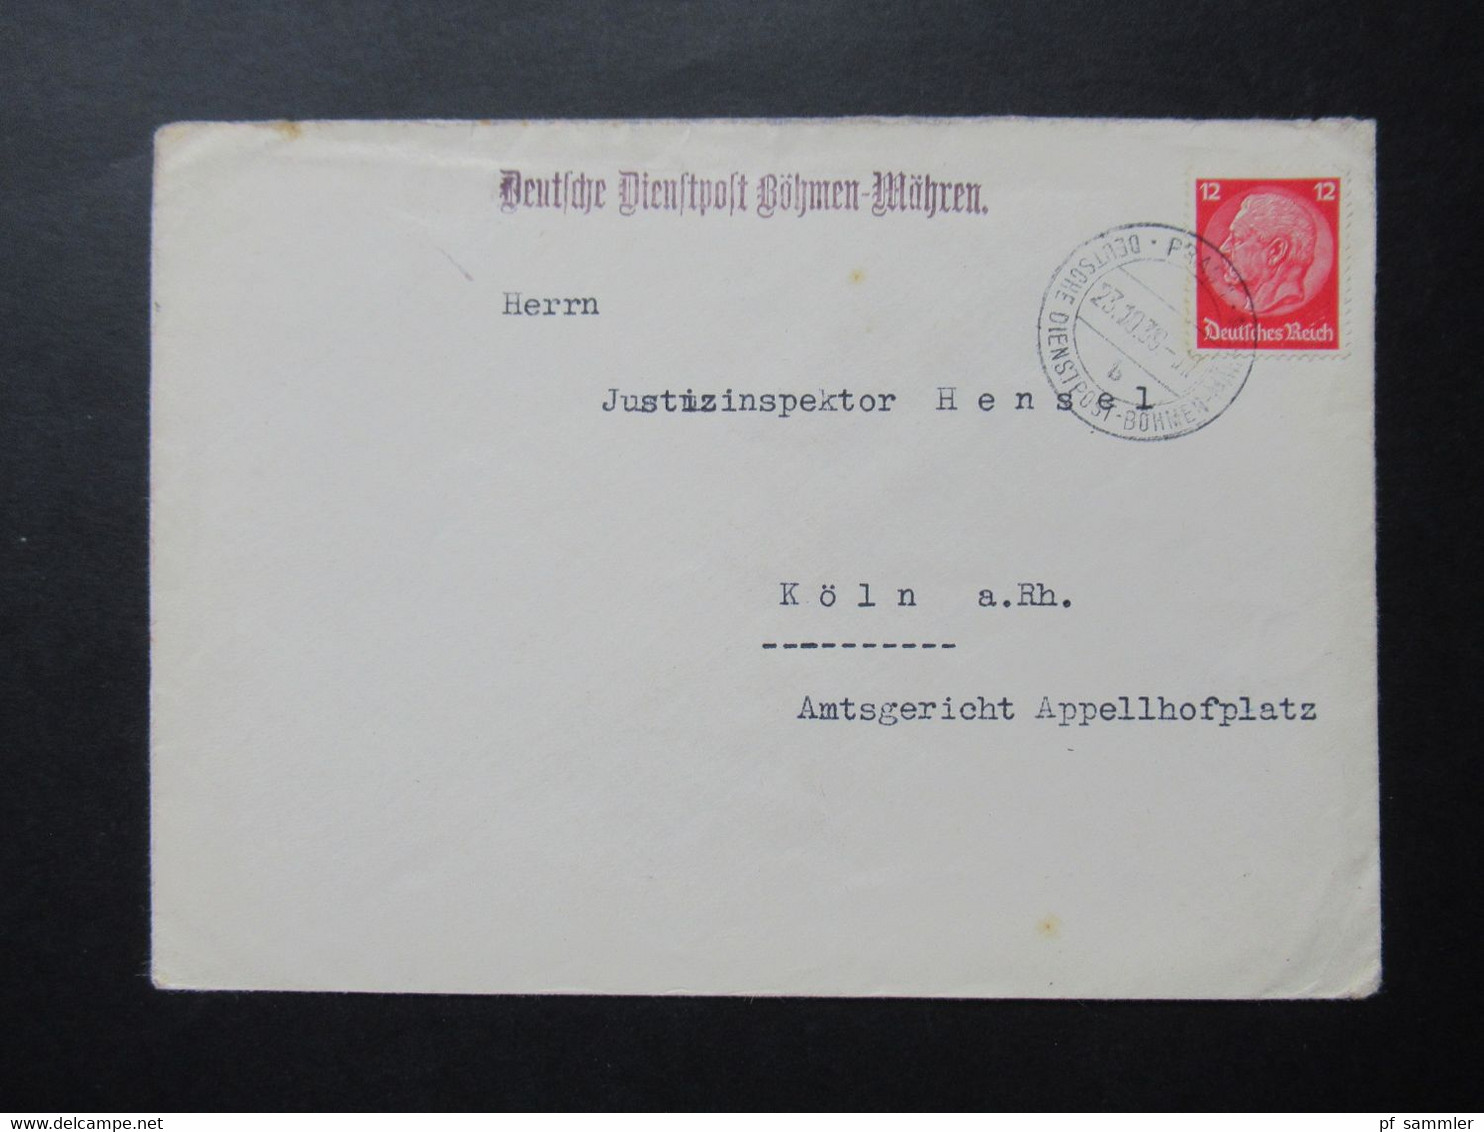 Böhmen Und Mähren 23.10.1939 Deutsche Dienstpost BuM Vom Justizinspektor Stürmer Prag XIX Deutsches Oberlandesgericht - Briefe U. Dokumente